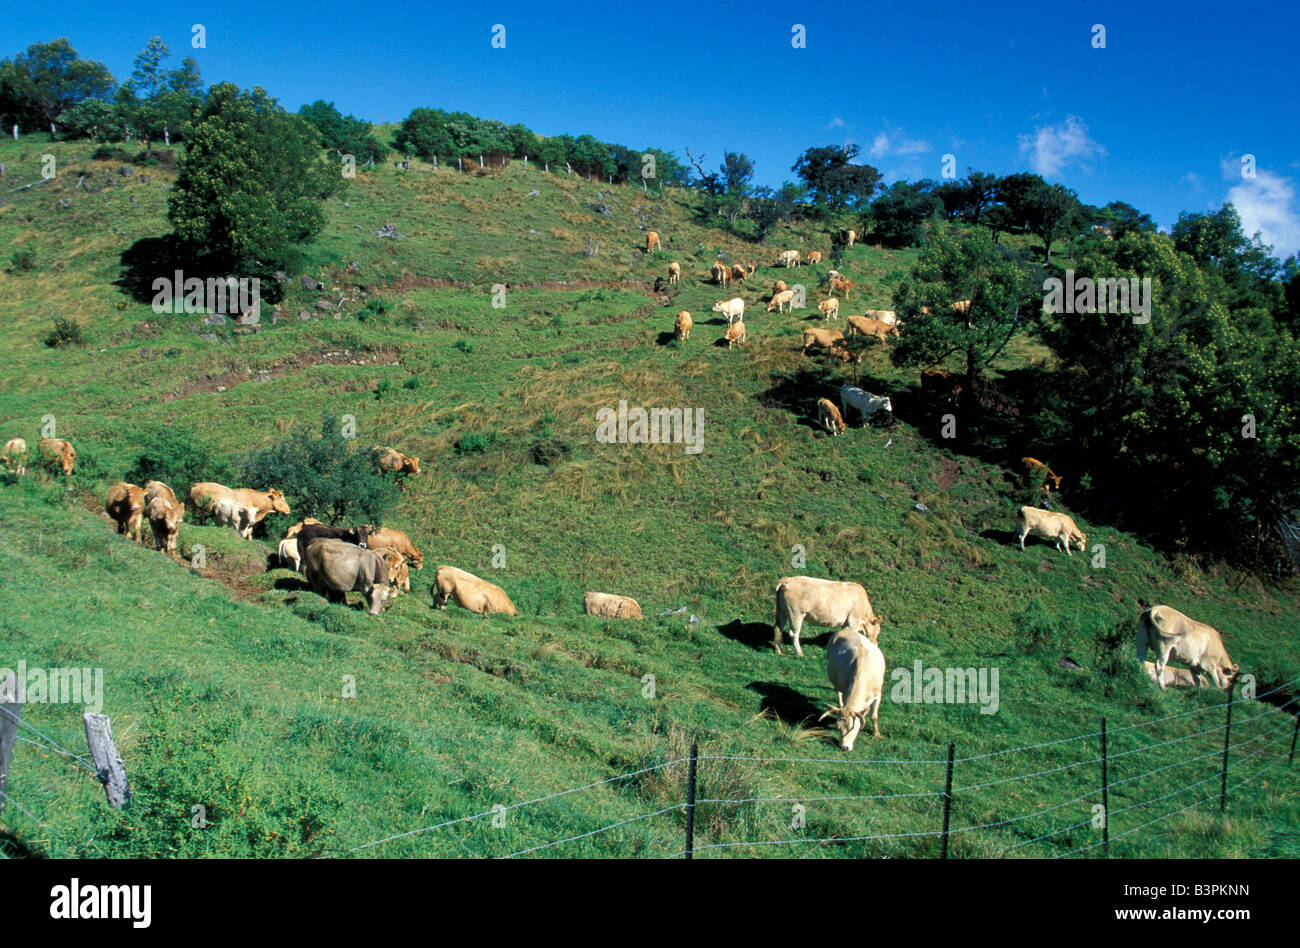 Les vaches au pâturage, de l'île de la Réunion, océan Indien, Afrique Banque D'Images